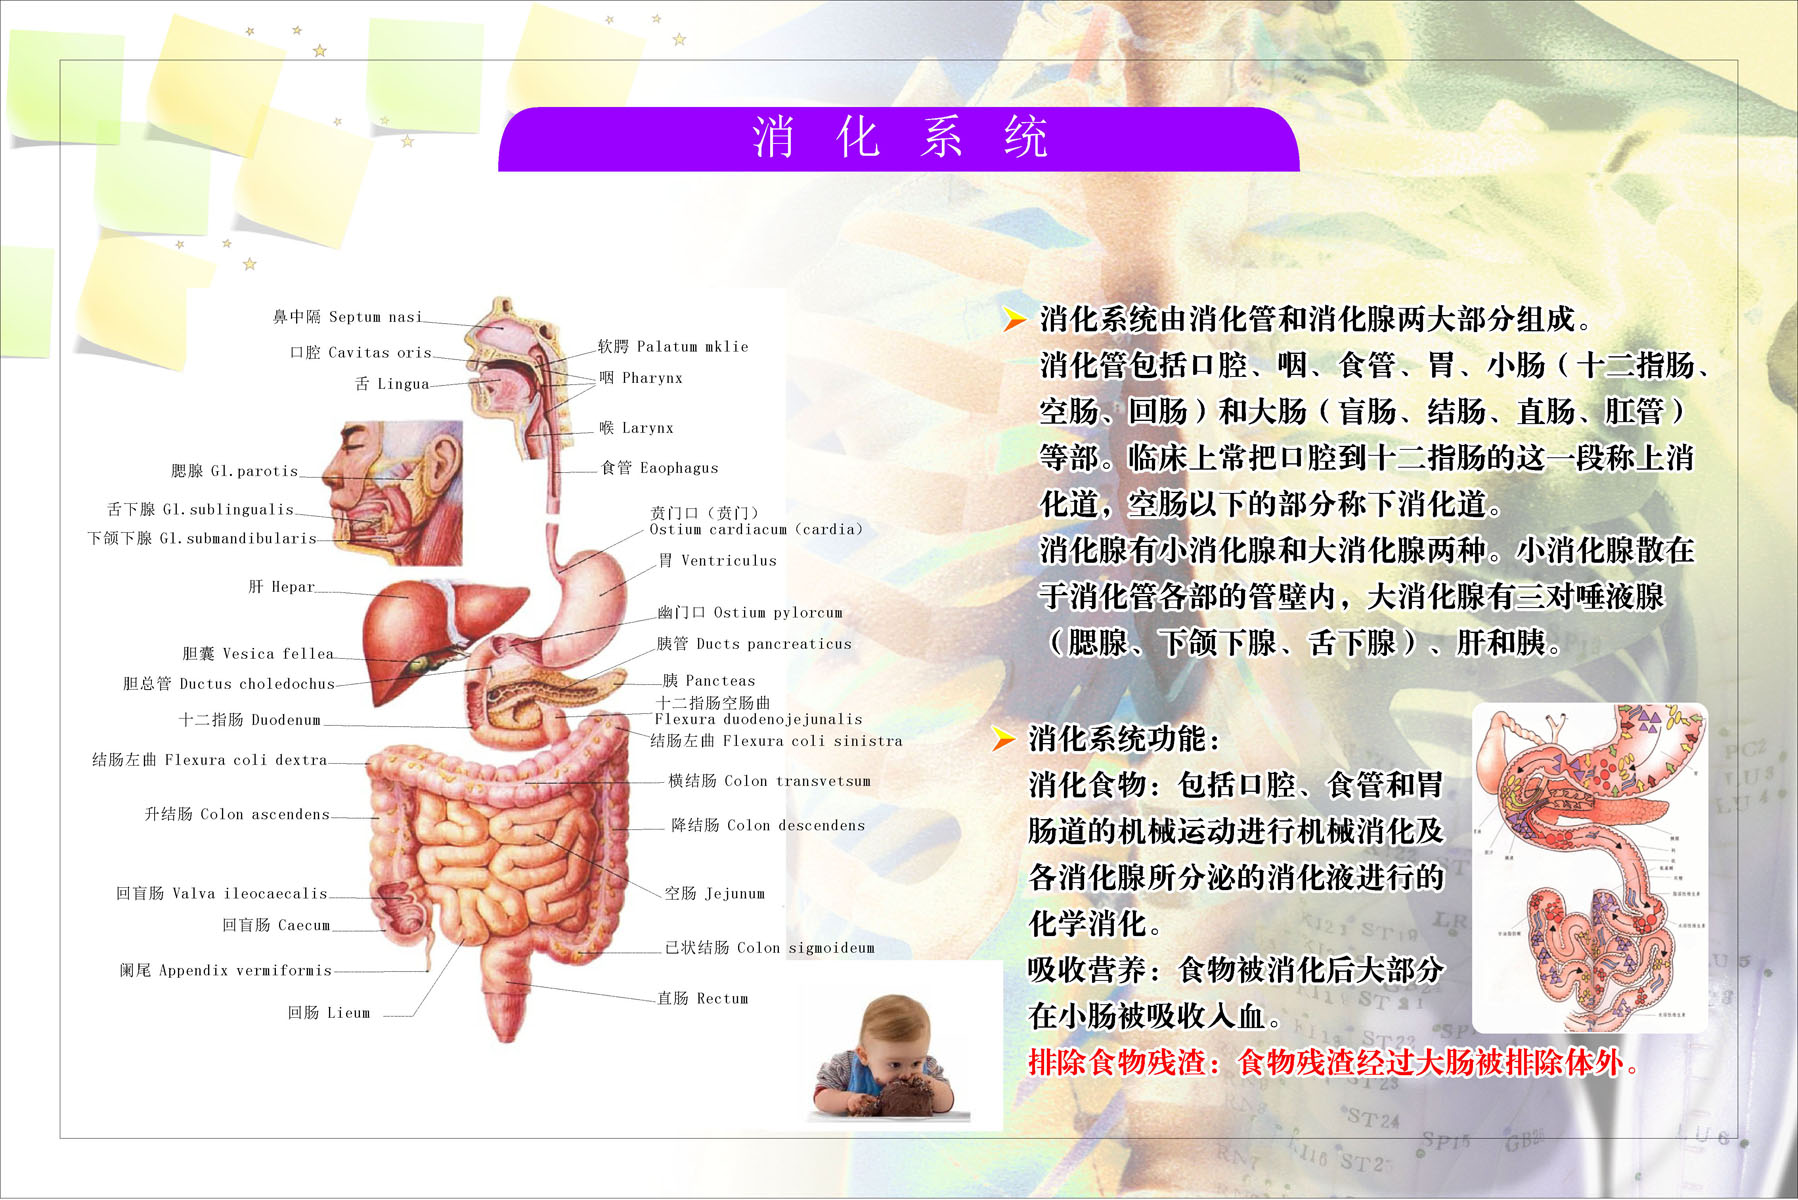 消化系统解剖图,人体消化系统解剖图